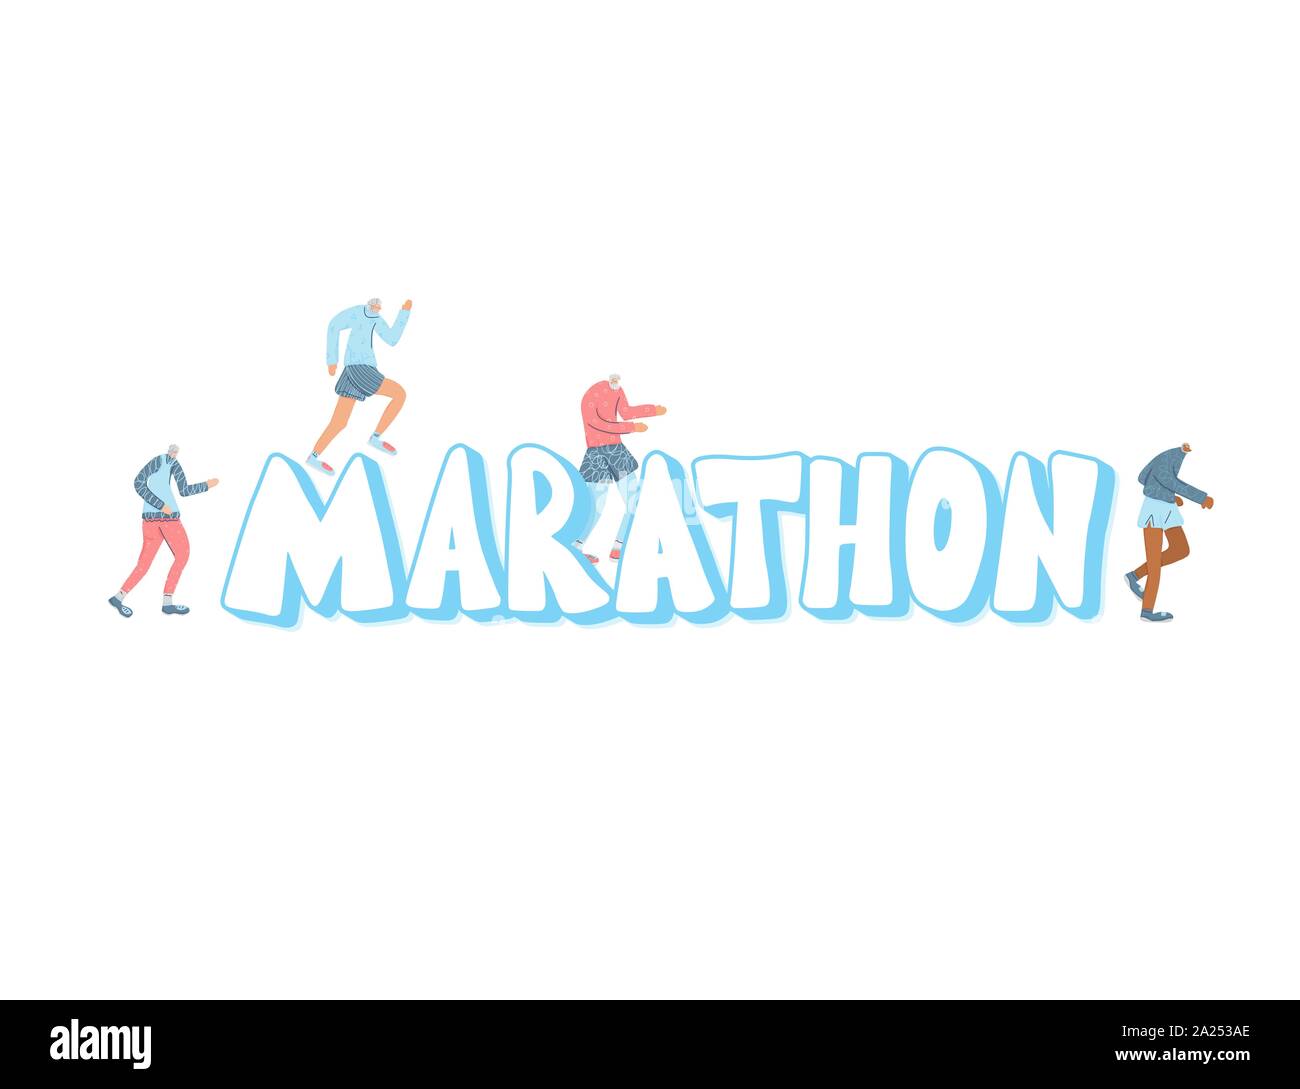 Texte stylisé géant marathon avec de petits coureurs. Vector illustration. Illustration de Vecteur